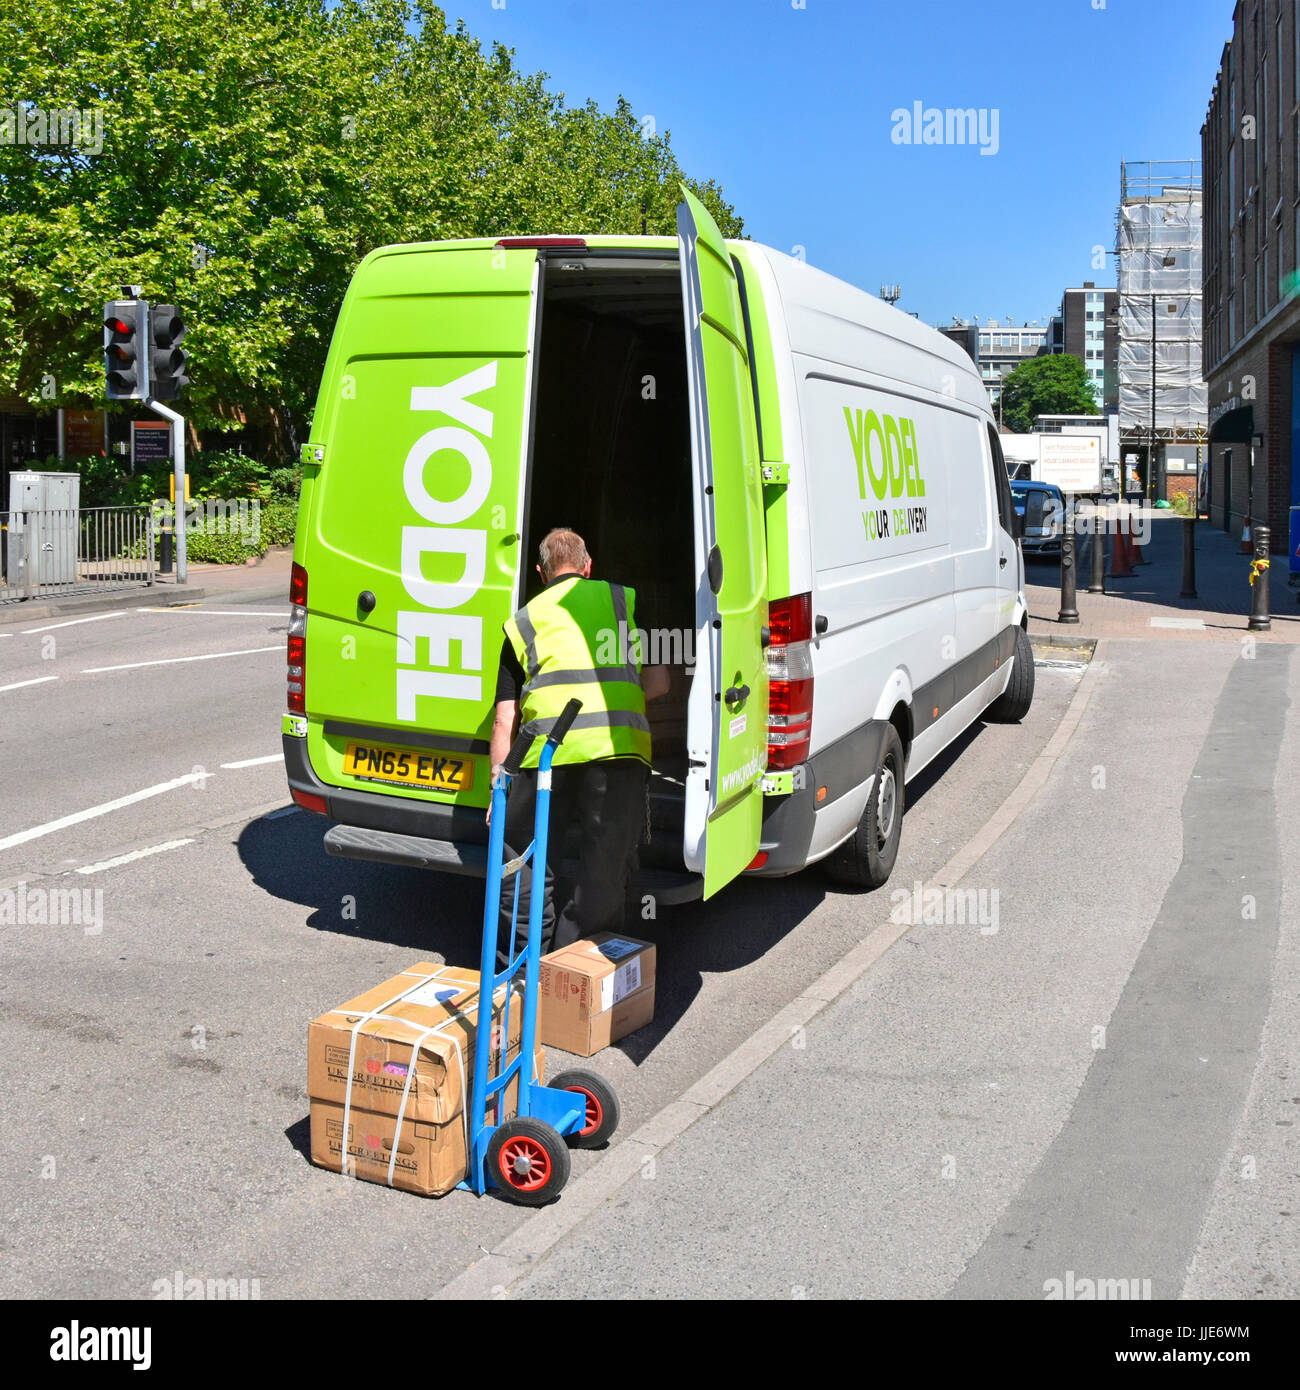 Jodel-Lieferwagen, der Pakete und Entladungen auf Rollkatzen transportiert, die Teil der nationalen britischen Lieferkette sind und Kisten zu nahegelegenen Straßengeschäften liefern Stockfoto